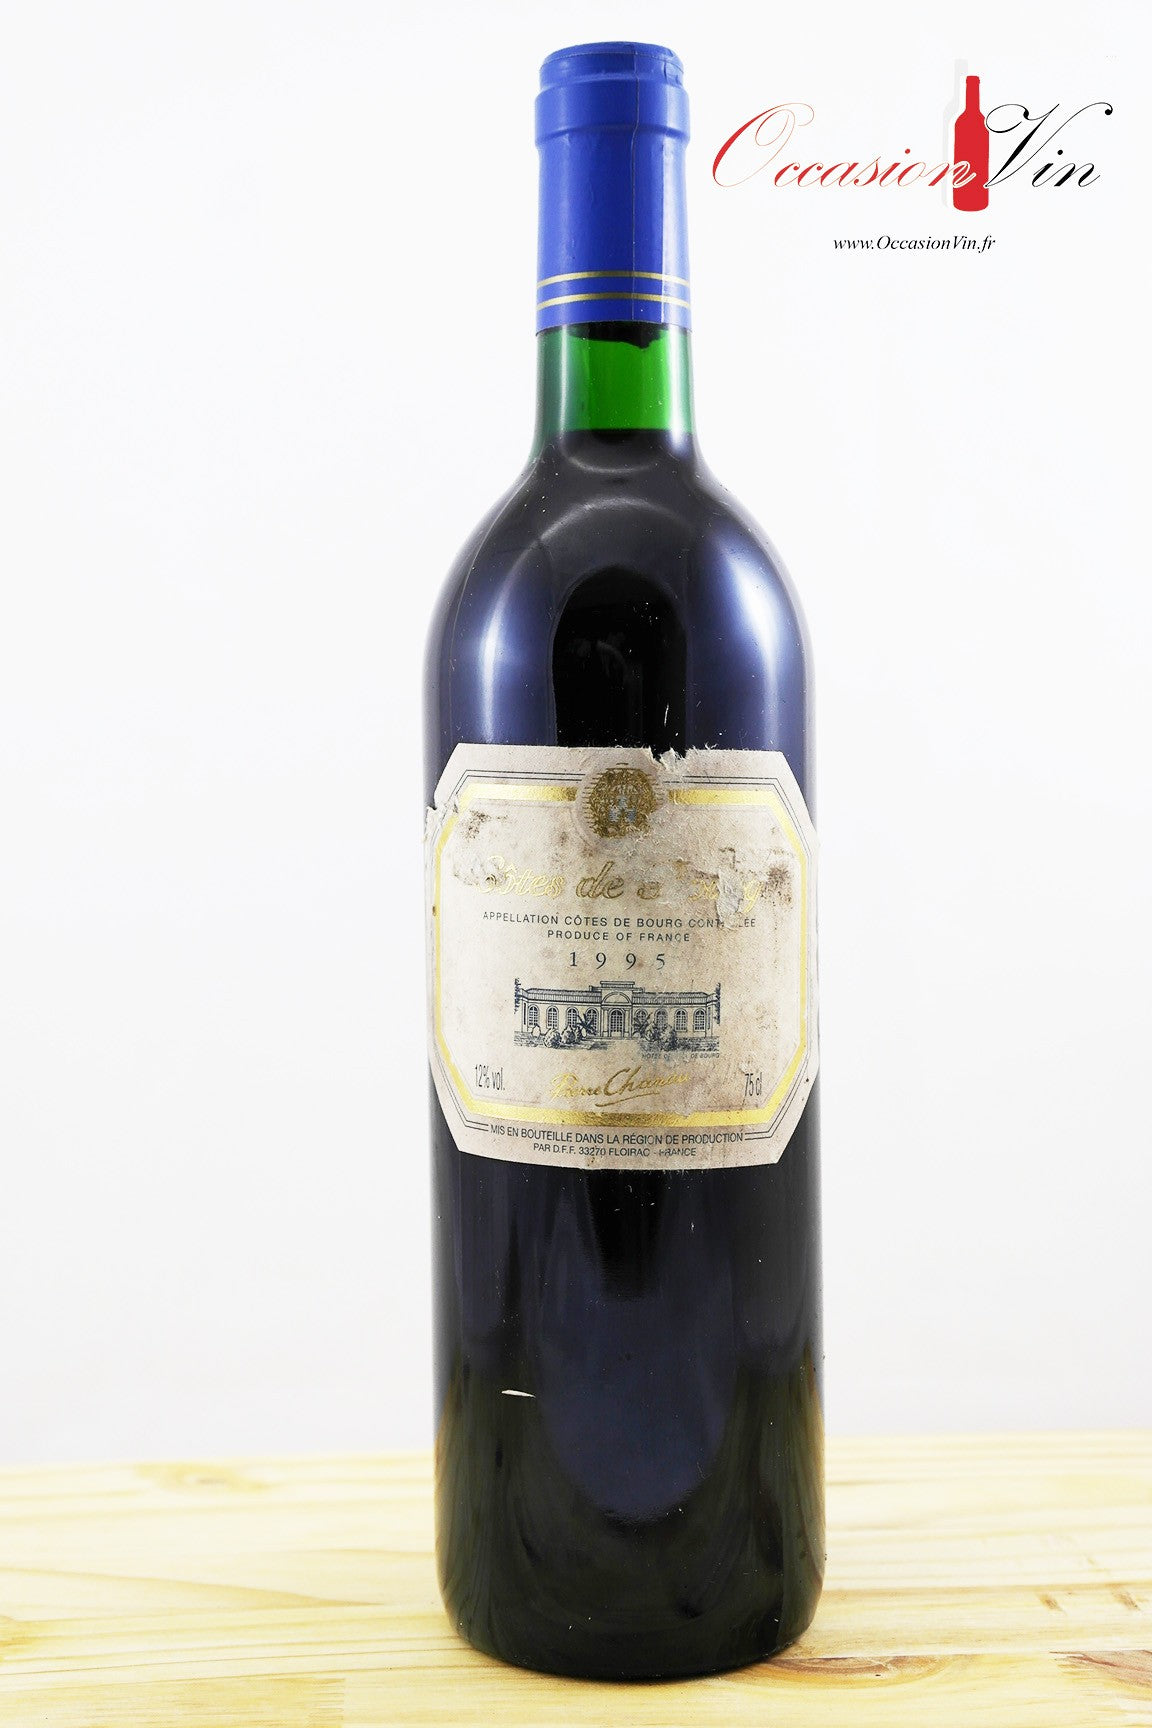 Côtes de Bourg Chaneau Vin 1995